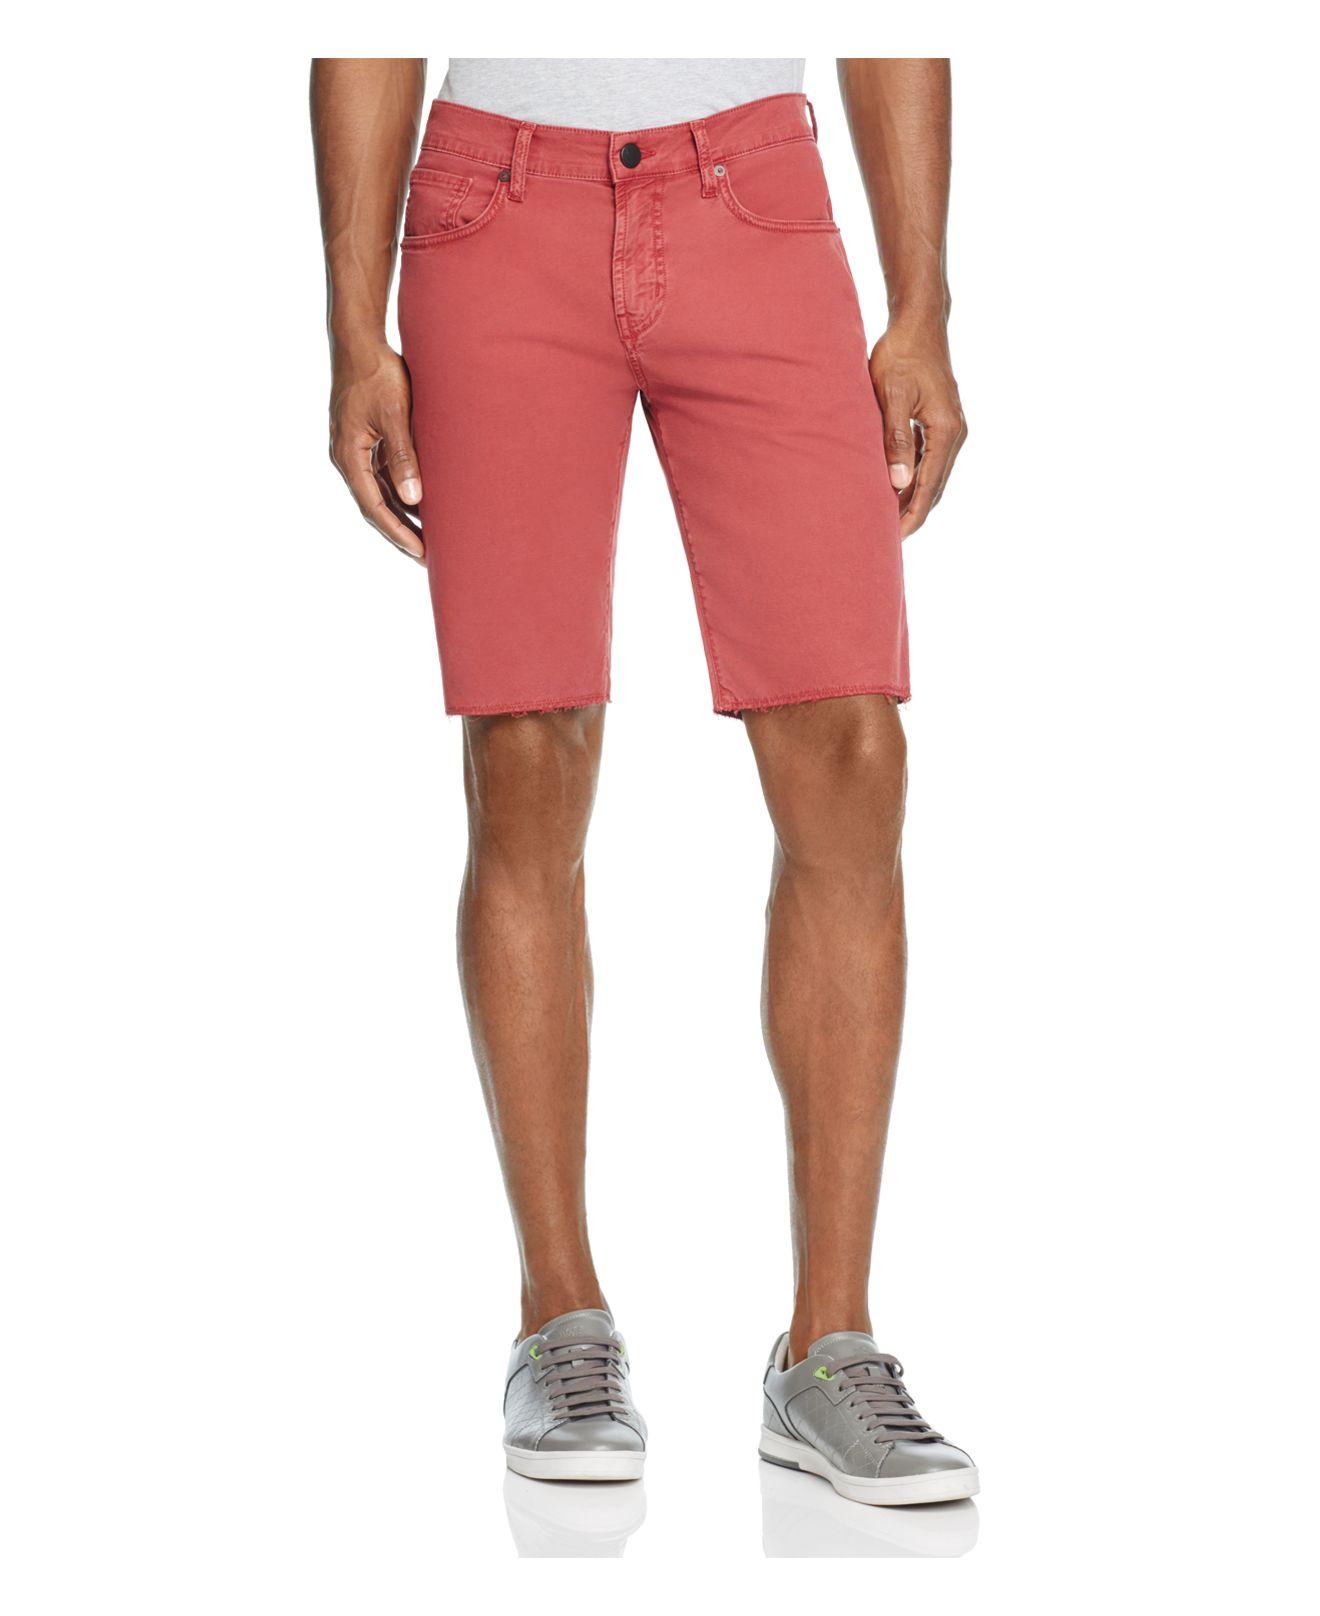 Lyst - J brand Tyler Slim Fit Denim Shorts in Red for Men